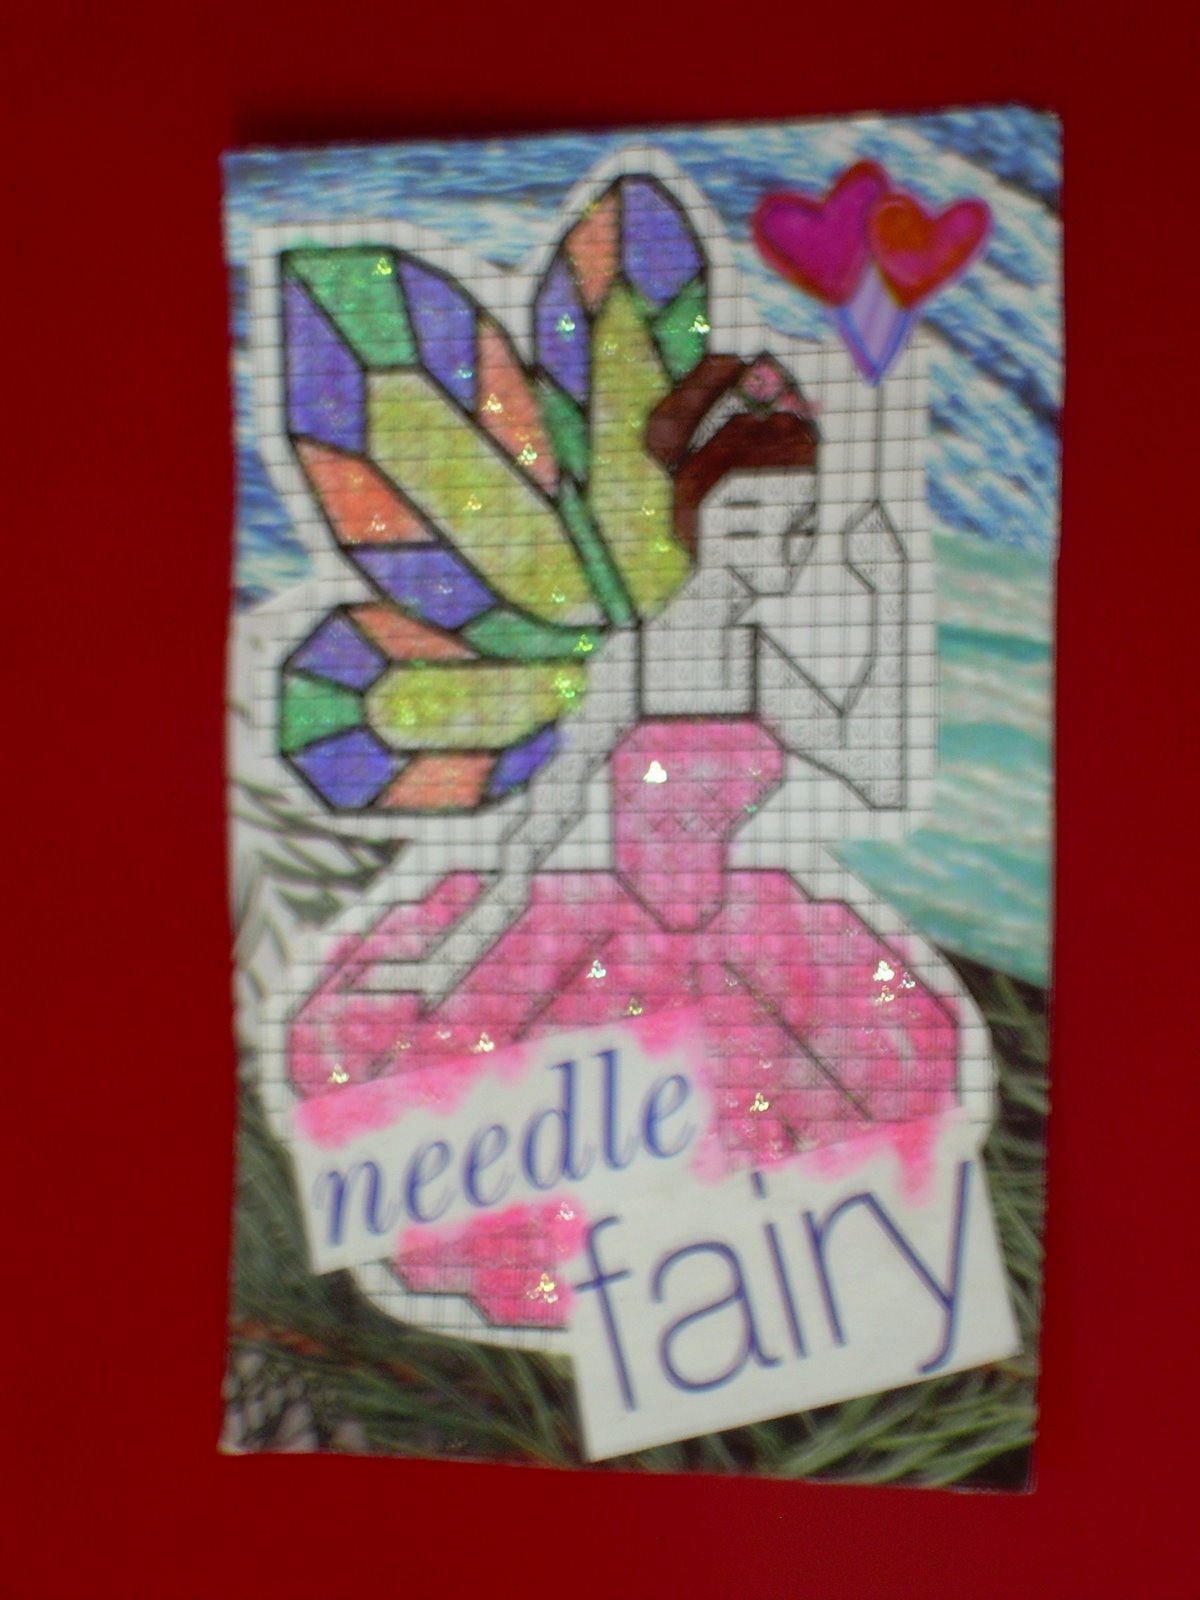 [needle+fairy+2.jpg]